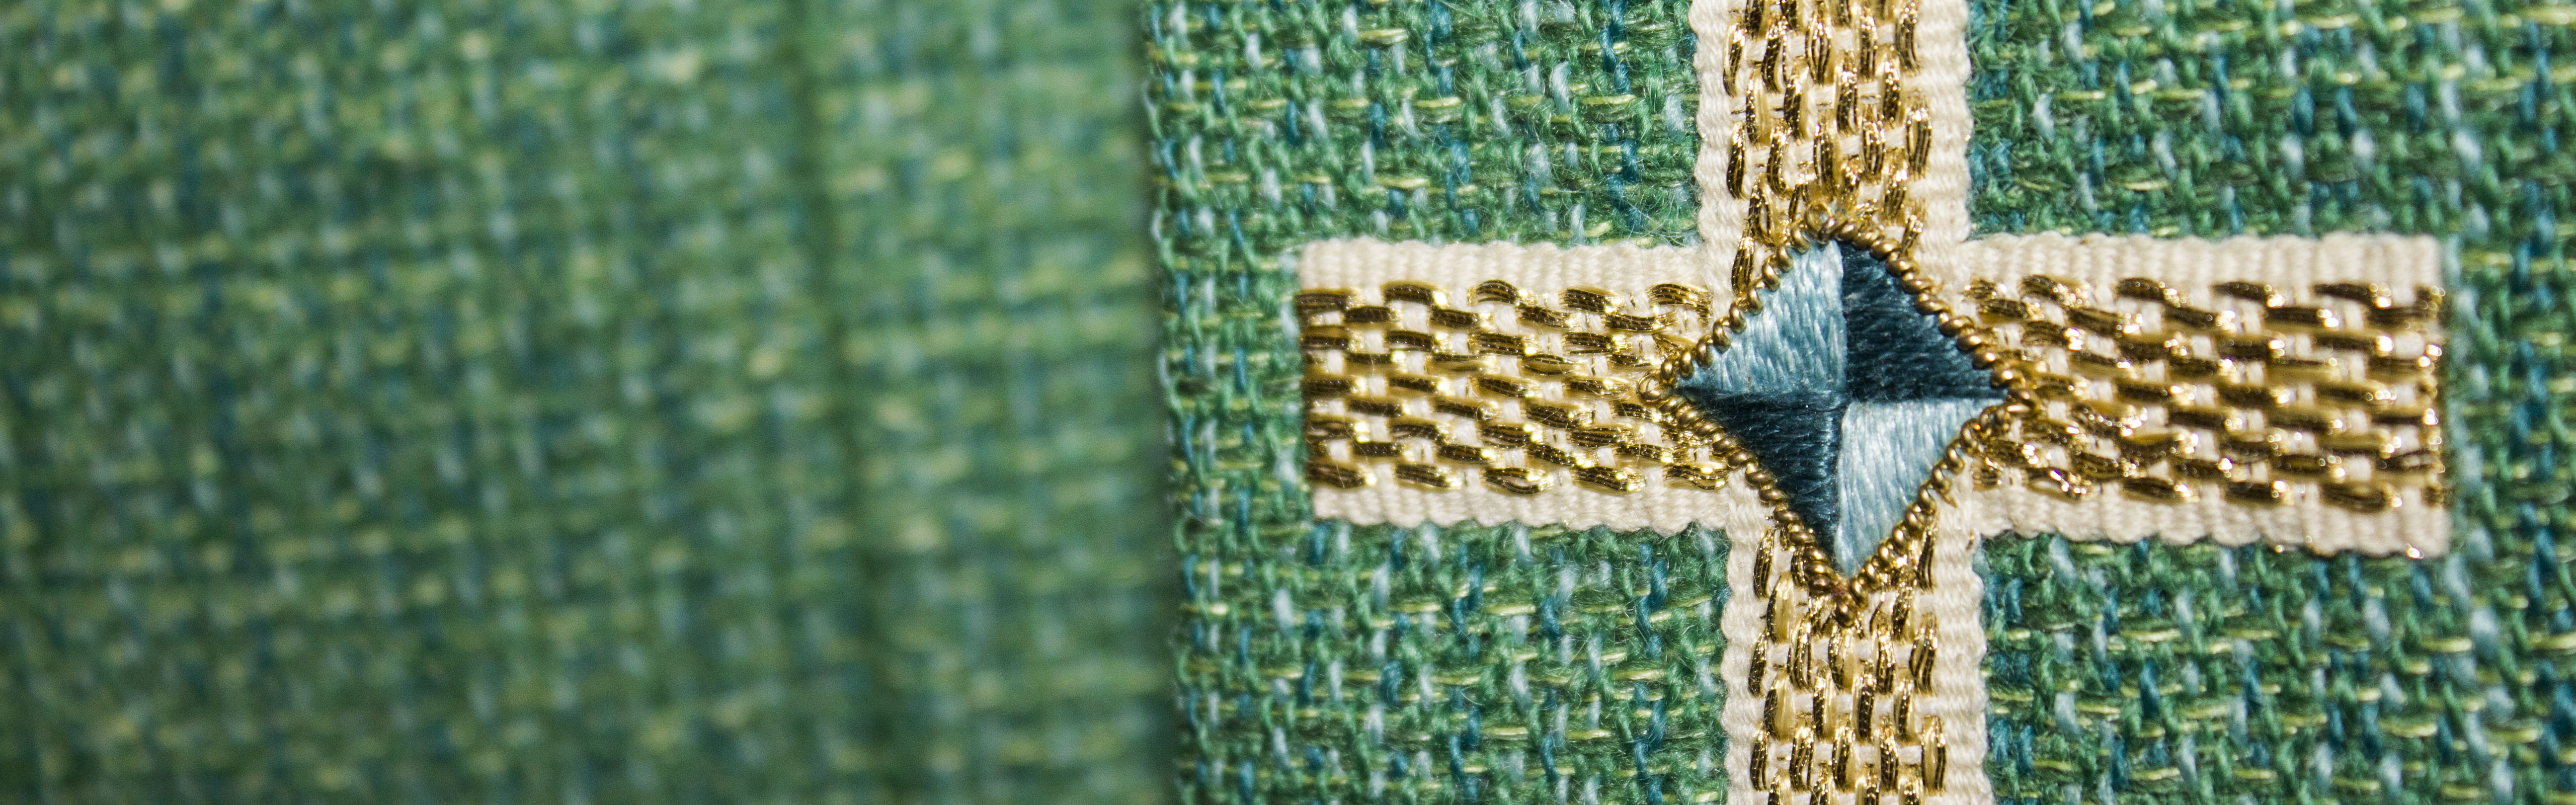 Ett broderat kors i guld, vitt och blått på grönt tyg.